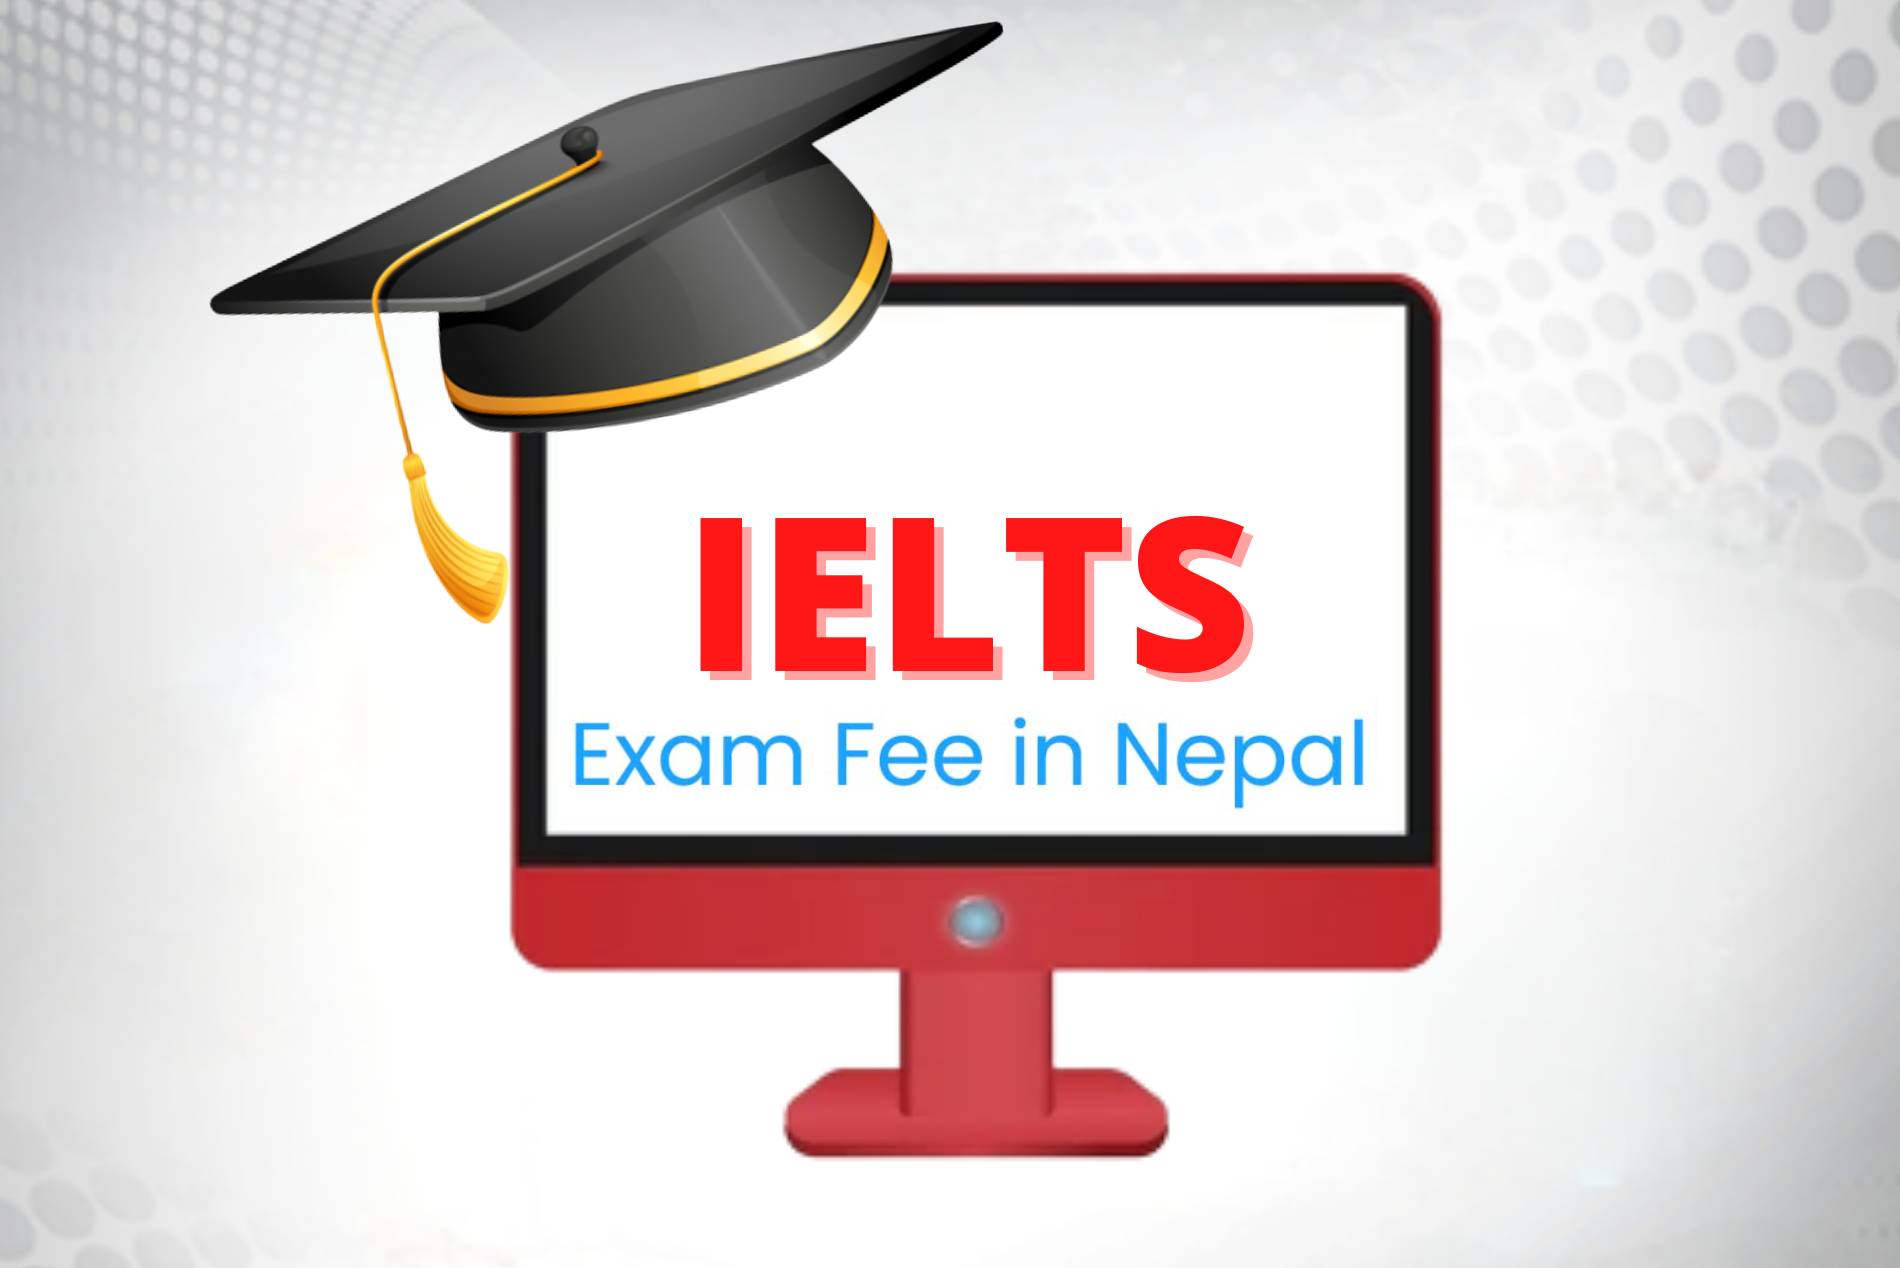 IELTS Course Fee in Nepal